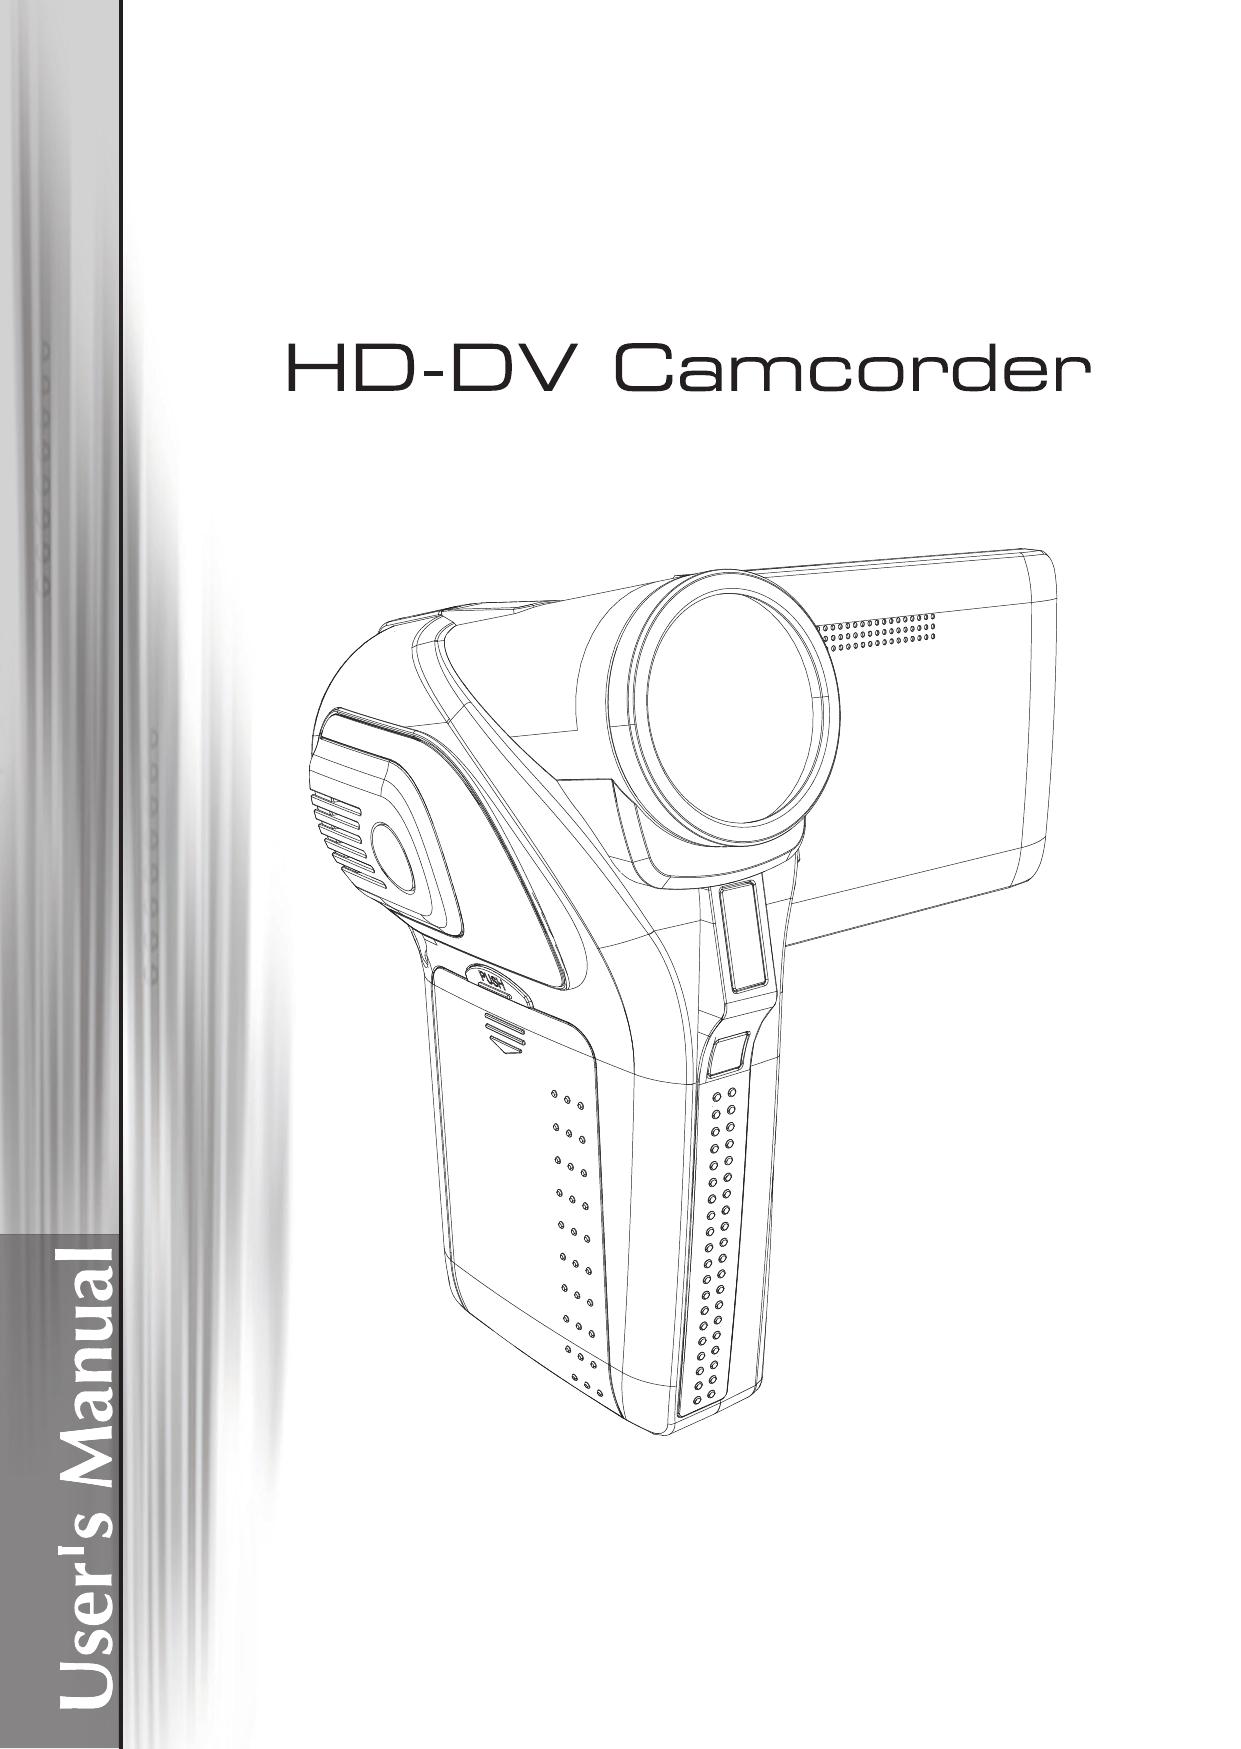 AIPTEK A-V5Z5S Camcorder User Manual